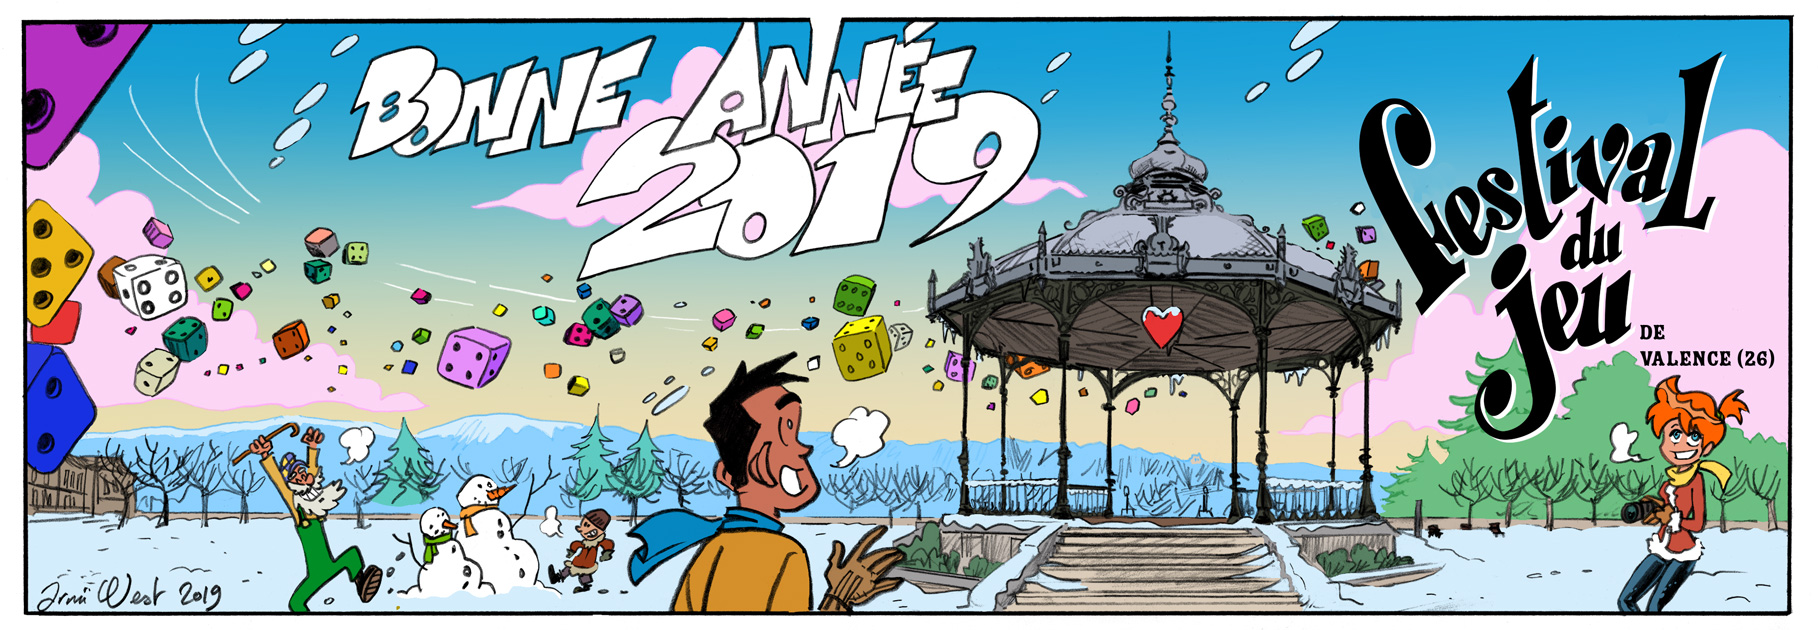 voeux 2019 du festival du jeu de Valence, dessiné par Arnü West et mis en couleurs par Albertine Ralenti